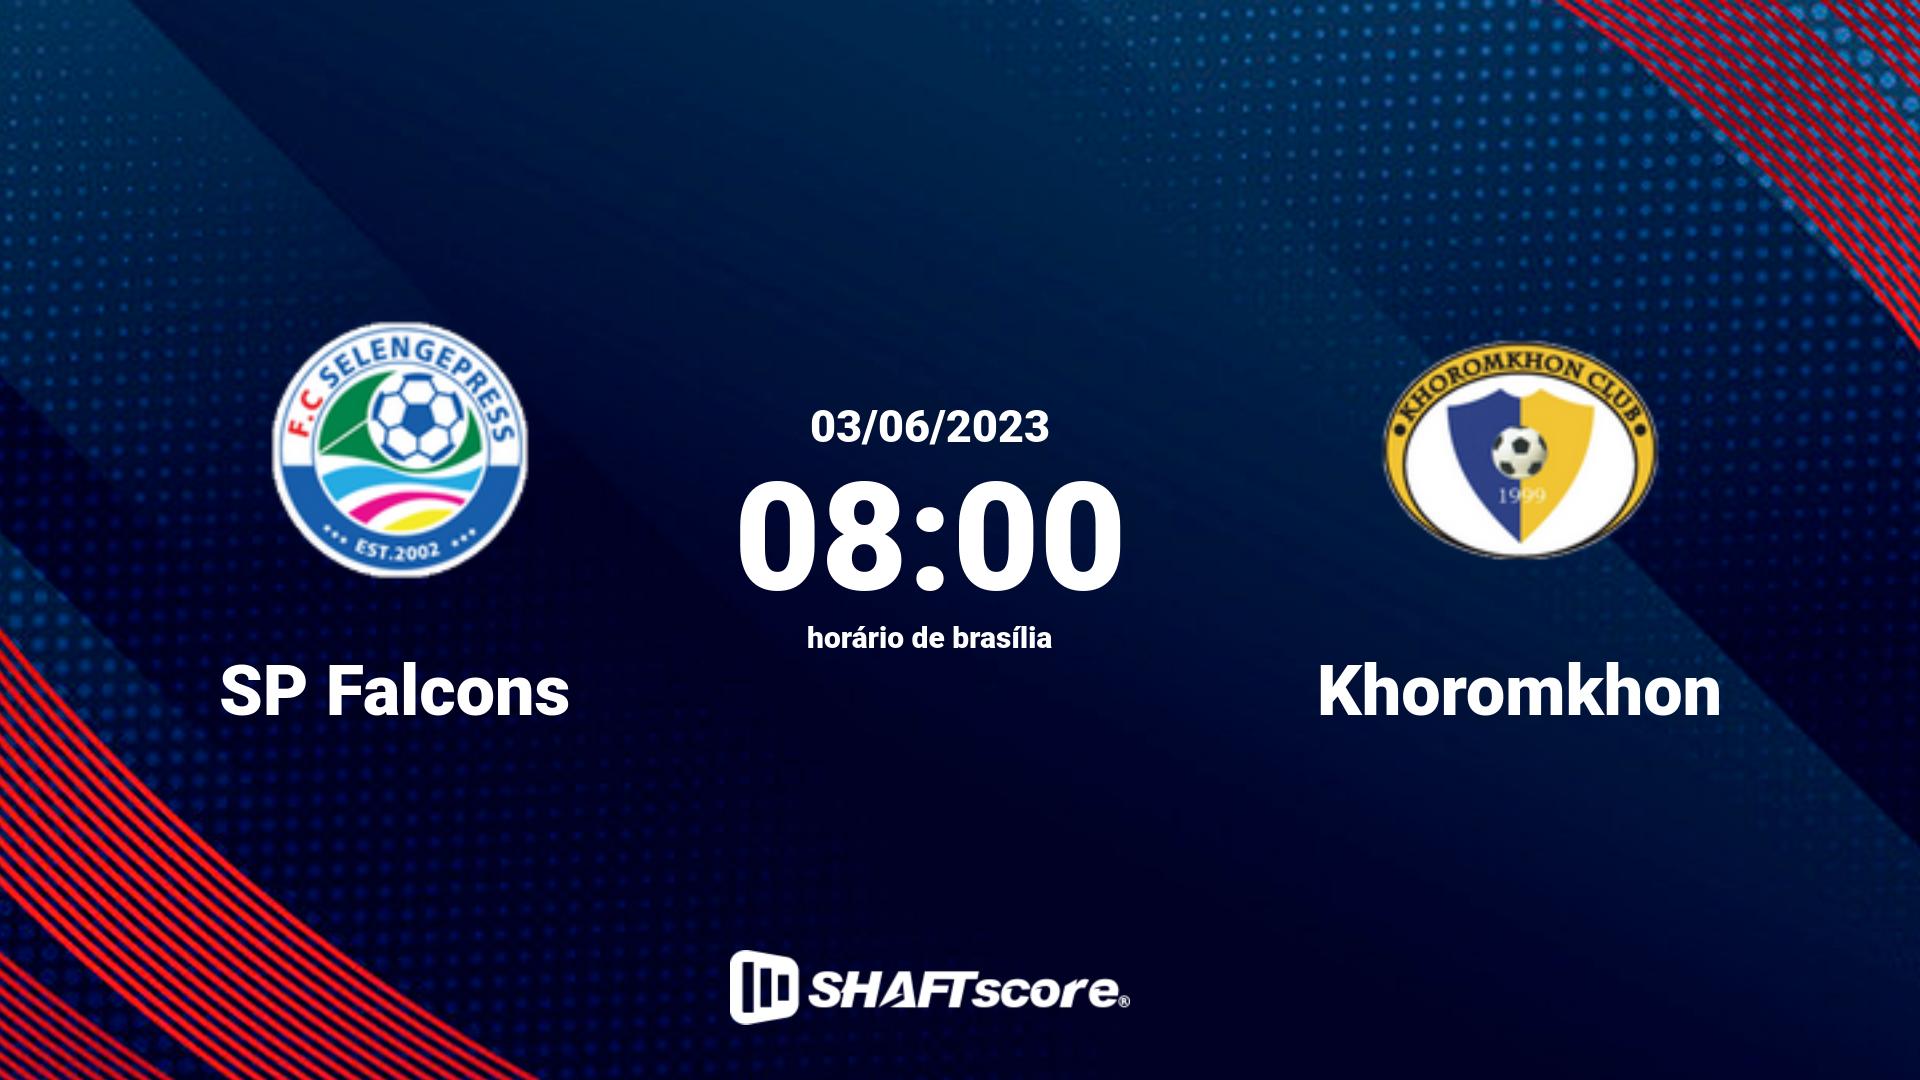 Estatísticas do jogo SP Falcons vs Khoromkhon 03.06 08:00